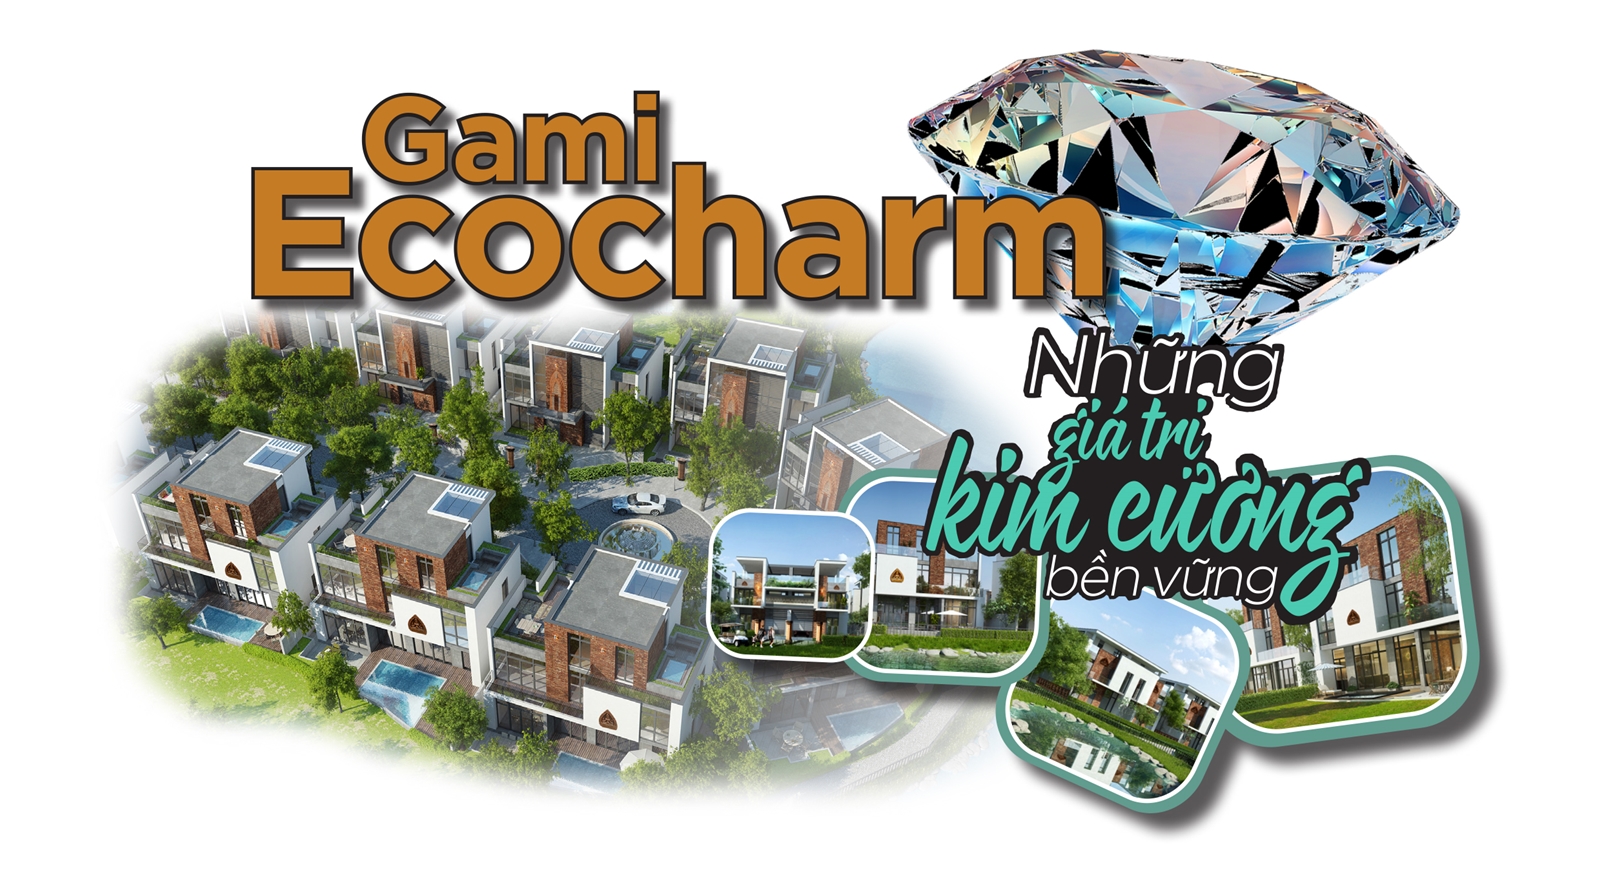 Gami Ecocharm – Từ sản phẩm BĐS nổi bật đến những giá trị kim cương bền vững